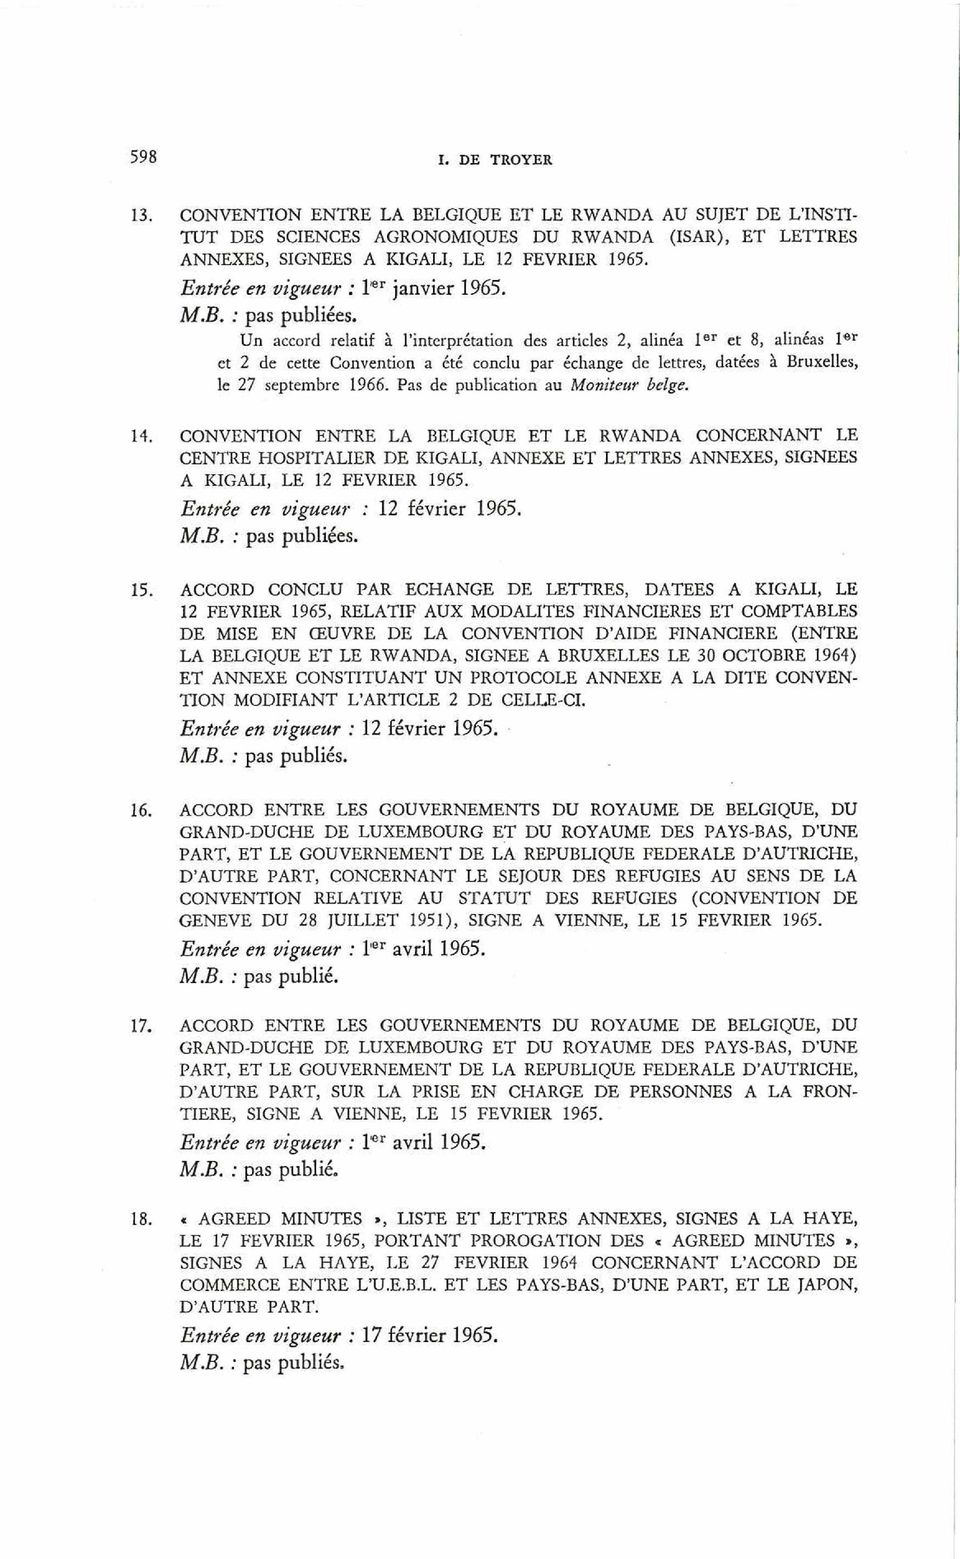 Un accord relatif à l interprétation des articles 2, alinéa 1er et 8, alinéas 1er et 2 de cette Convention a été conclu par échange de lettres, datées à Bruxelles, le 27 septembre 1966.